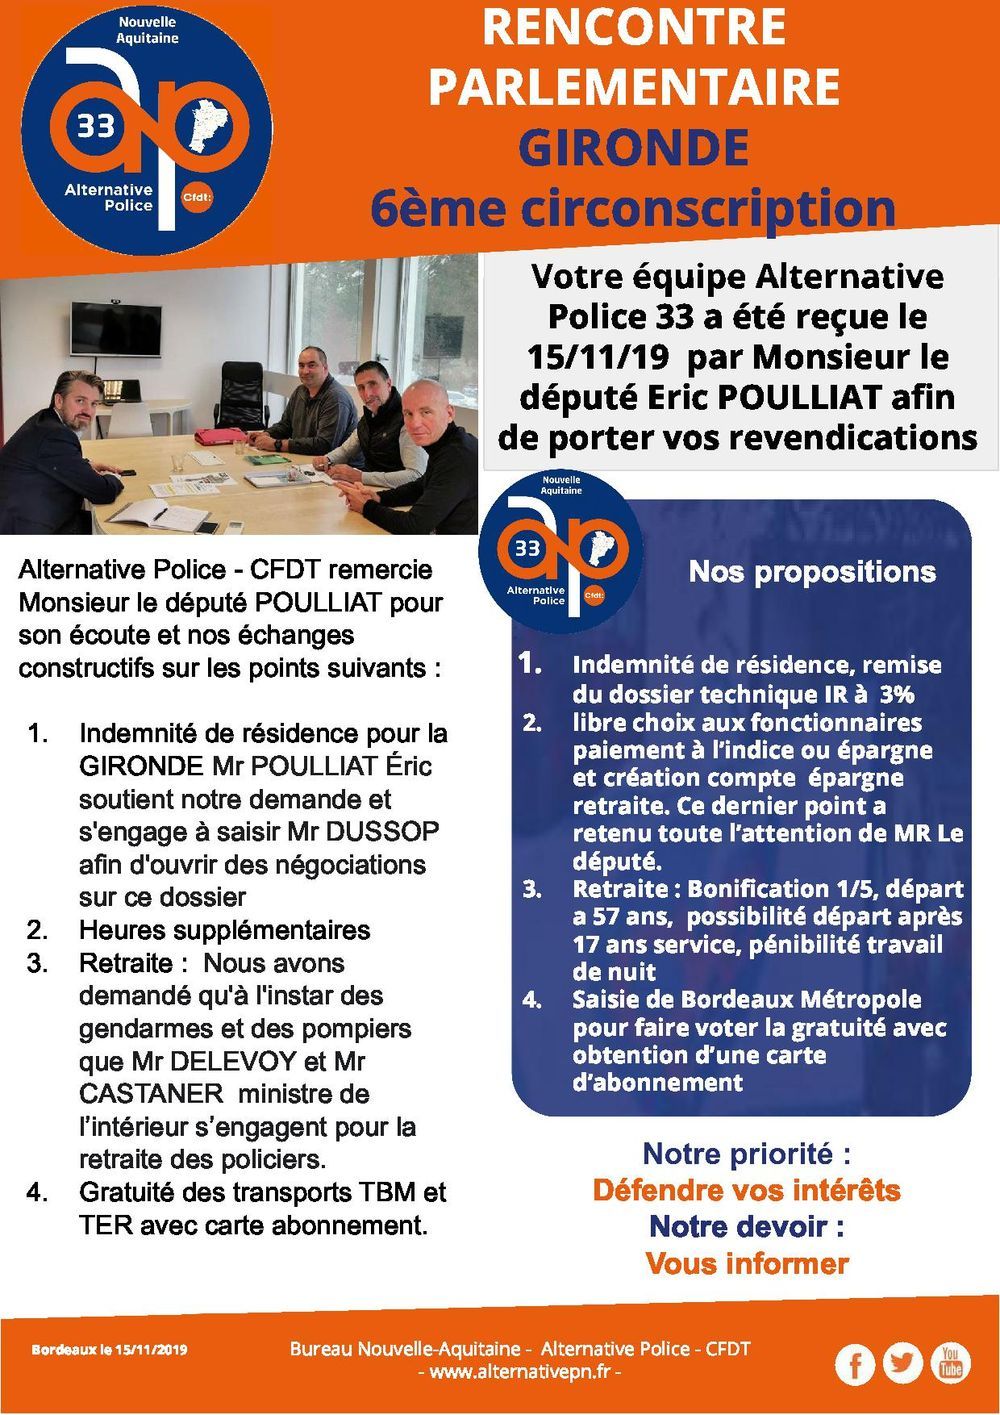 rencontre parlementaire Gironde 6ème circonscription